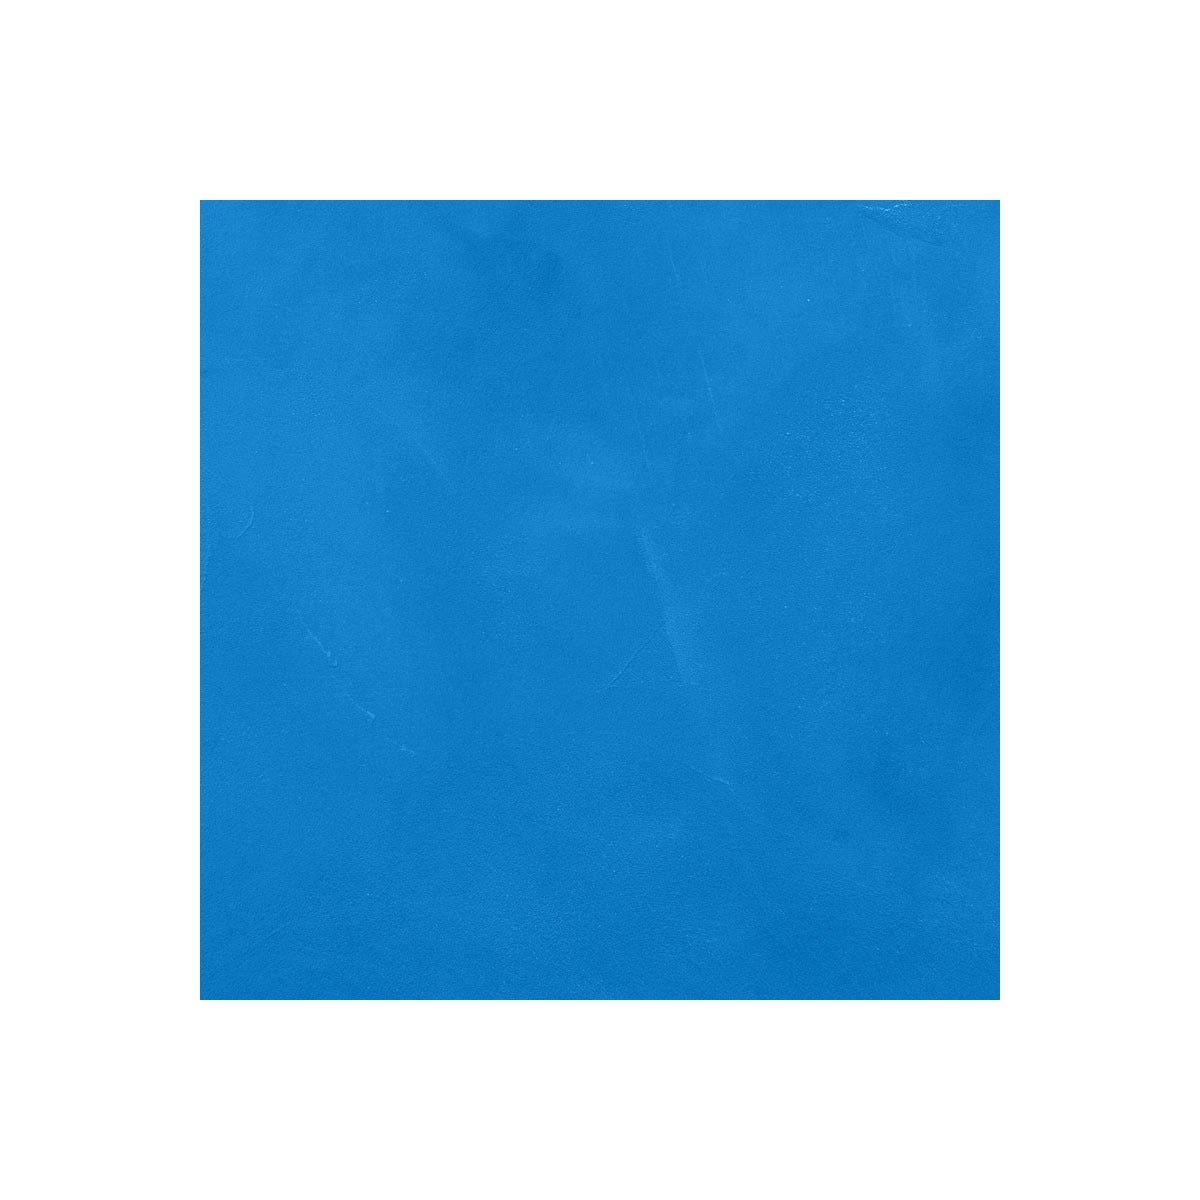 Béton Ciré Sol en - Primaire et vernis de finition inclus - 2 m² (en 2 couches) - Prussia Bleu - ARCANE INDUSTRIES 1